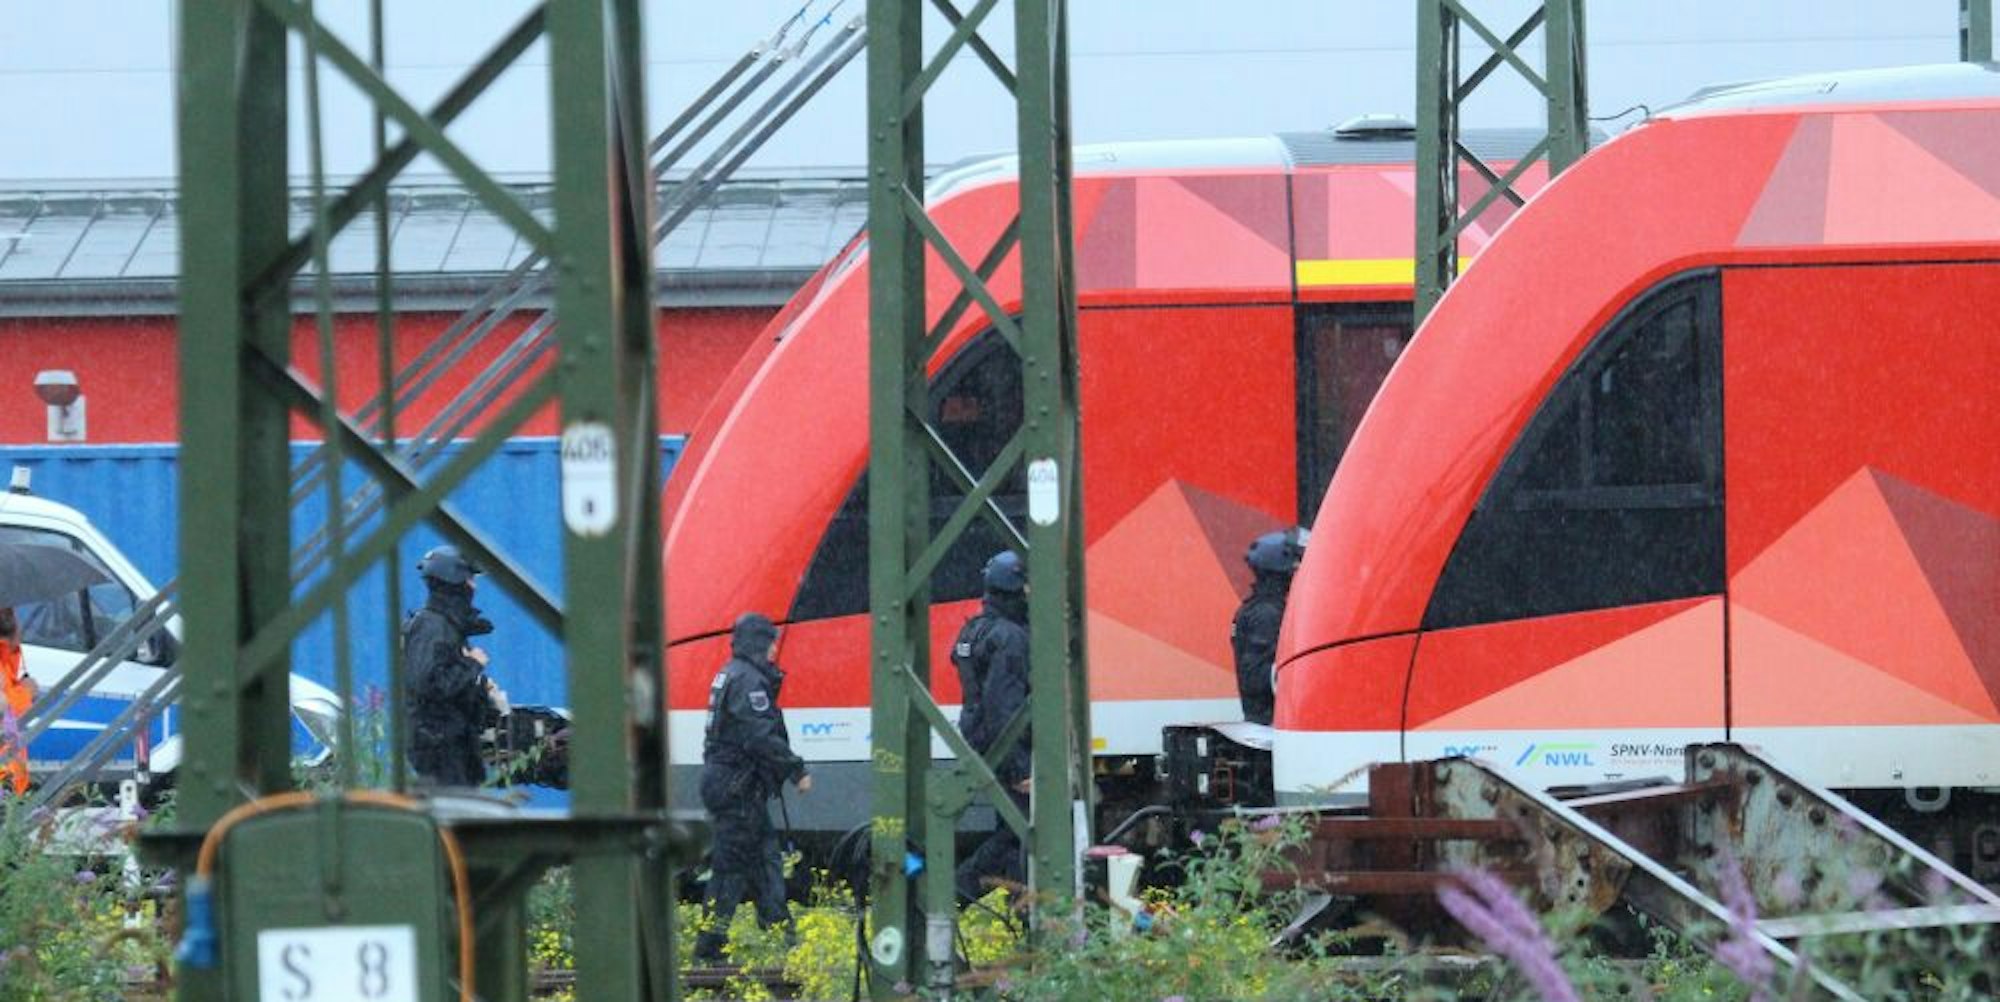 Auf dem Betriebsbahnhof Deutzer Feld in Köln durchsuchten Polizisten am Samstag Züge nach weiteren Sprengsätzen.